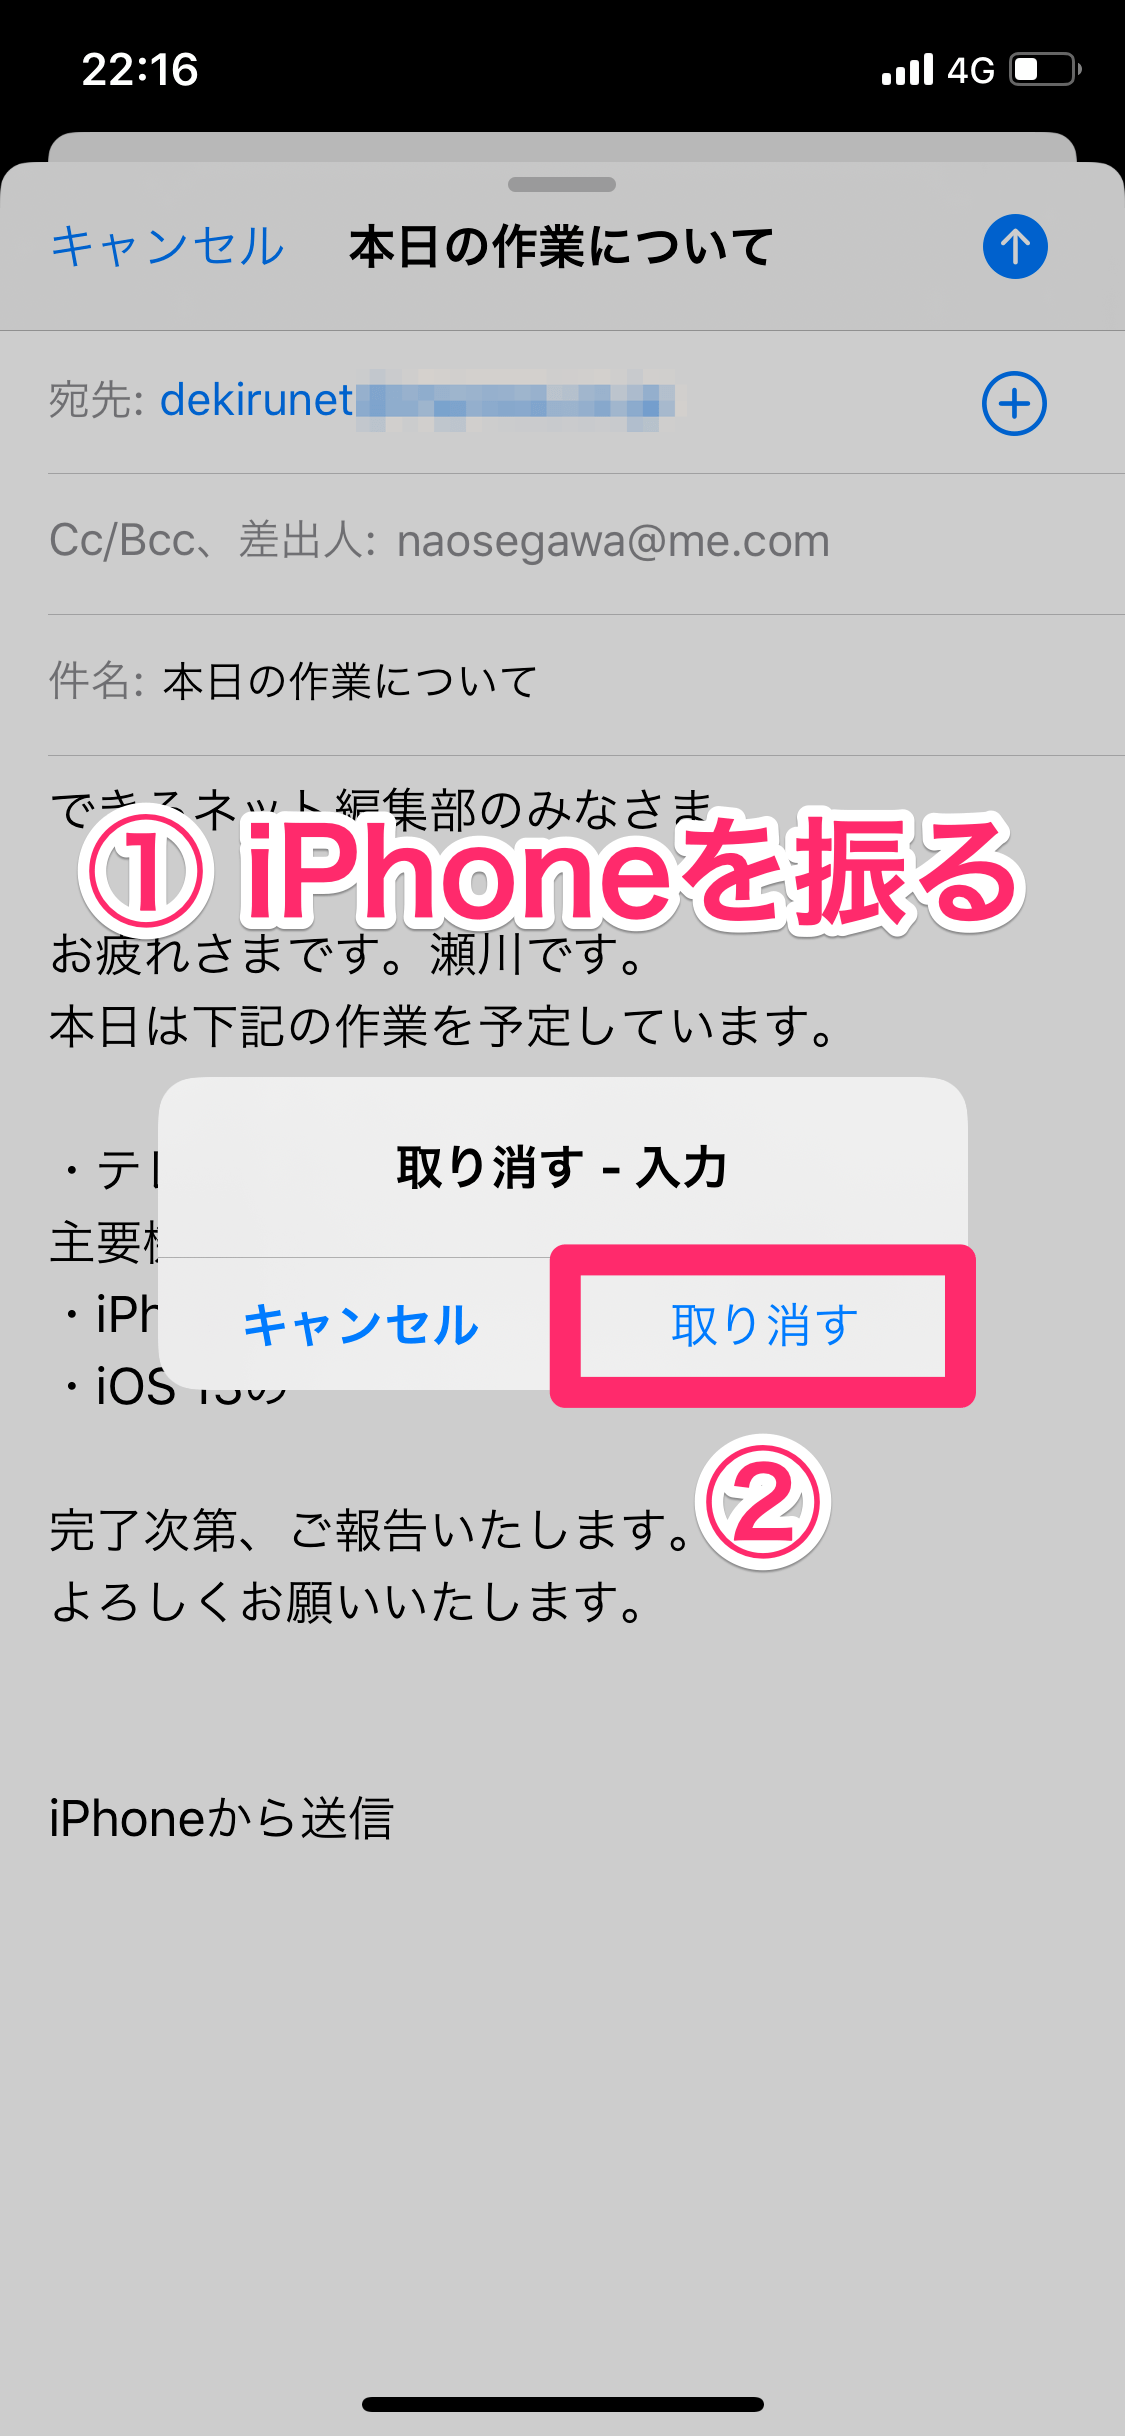 Ios 13 シェイクで取り消し はもう古い 3本指でタップすればiphoneを落とす心配なし Iphone できるネット